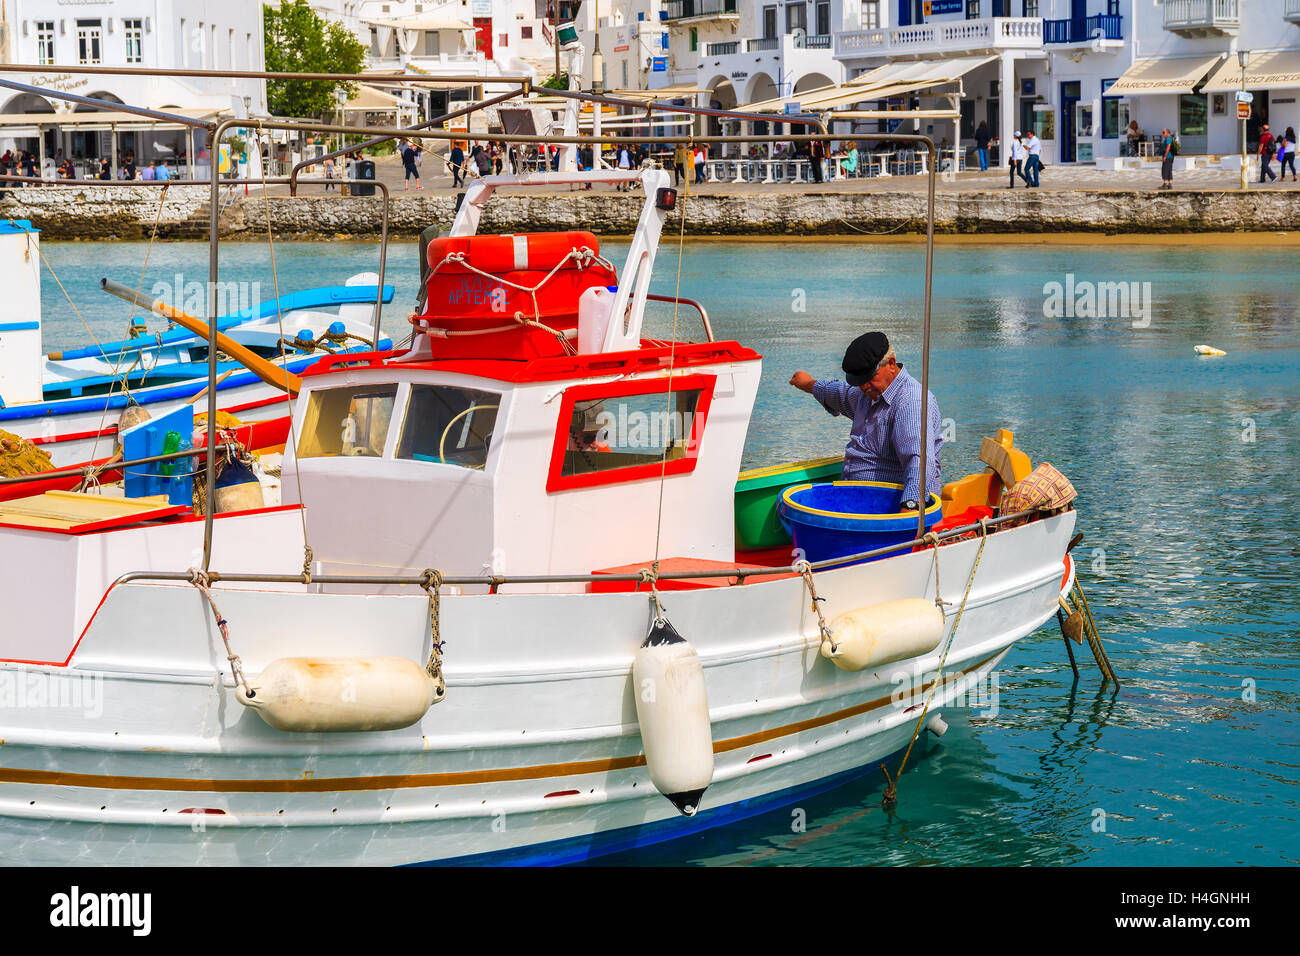 L'île de Mykonos, Grèce - 14 MAI 2016 : pêcheur travaillant sur un bateau de pêche dans le port de Mykonos, l'île de Mykonos, en Grèce. Banque D'Images